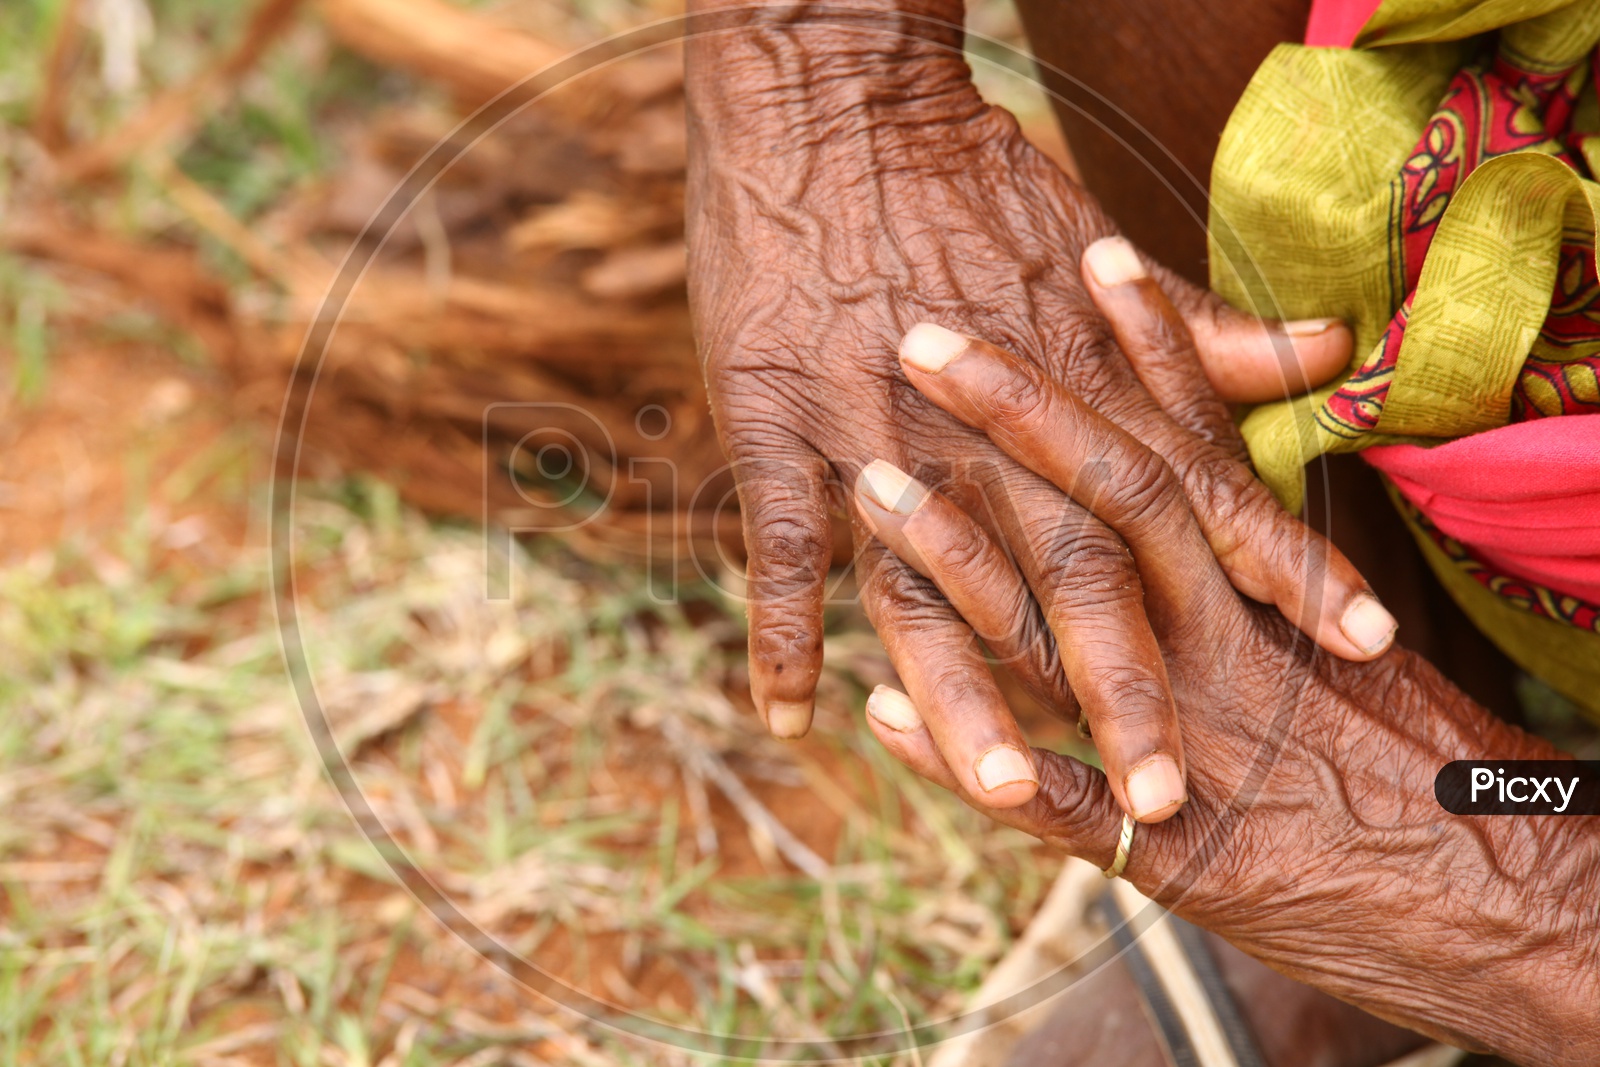 Hands of Old women